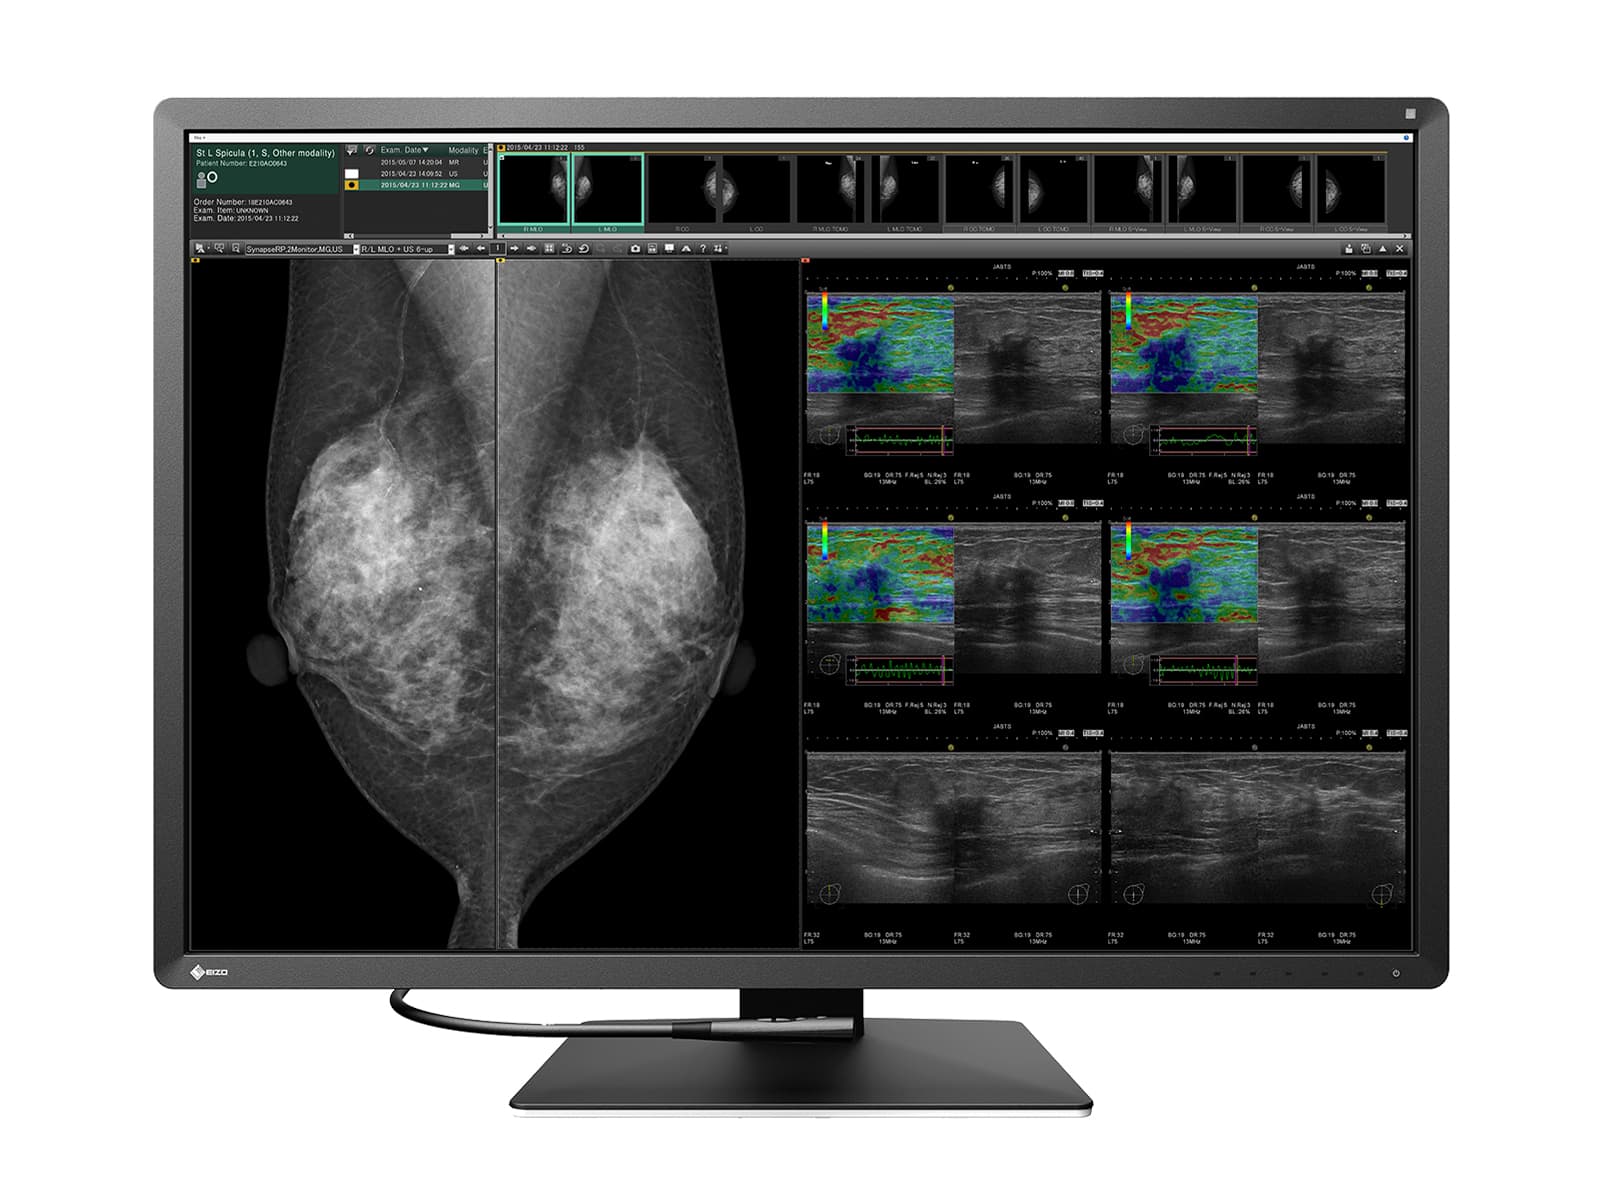 Estación completa de lectura de mamografía | Pantalla Eizo | Estación de trabajo Lenovo (RX1270P520) Monitors.com